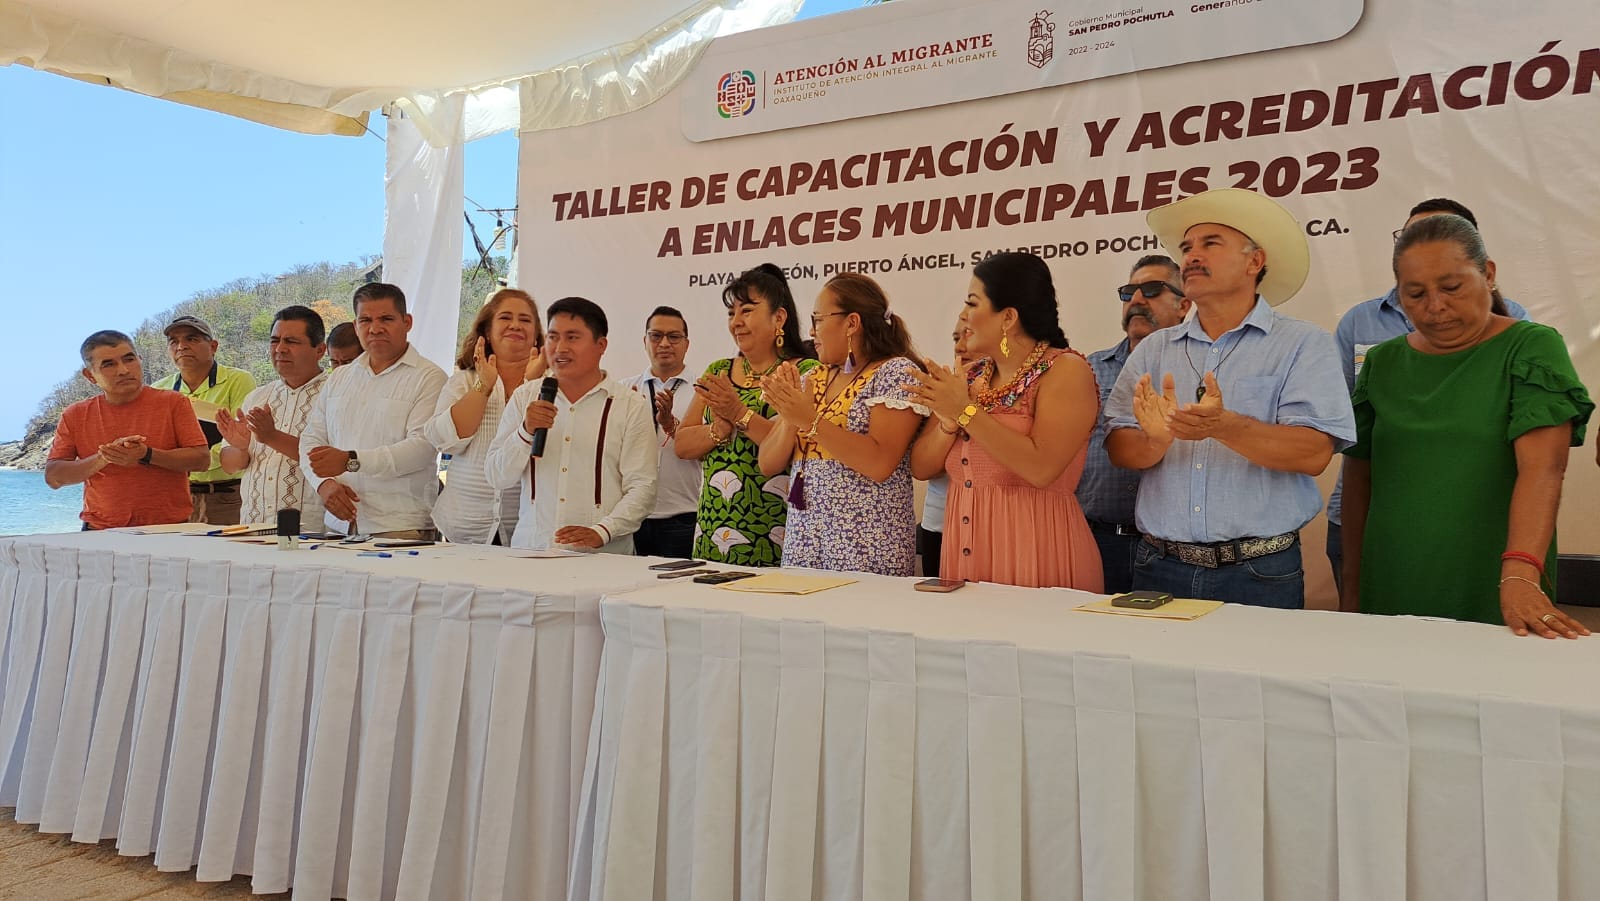 El IAIMO y los municipios firman convenios de colaboración en San Pedro Pochutla.